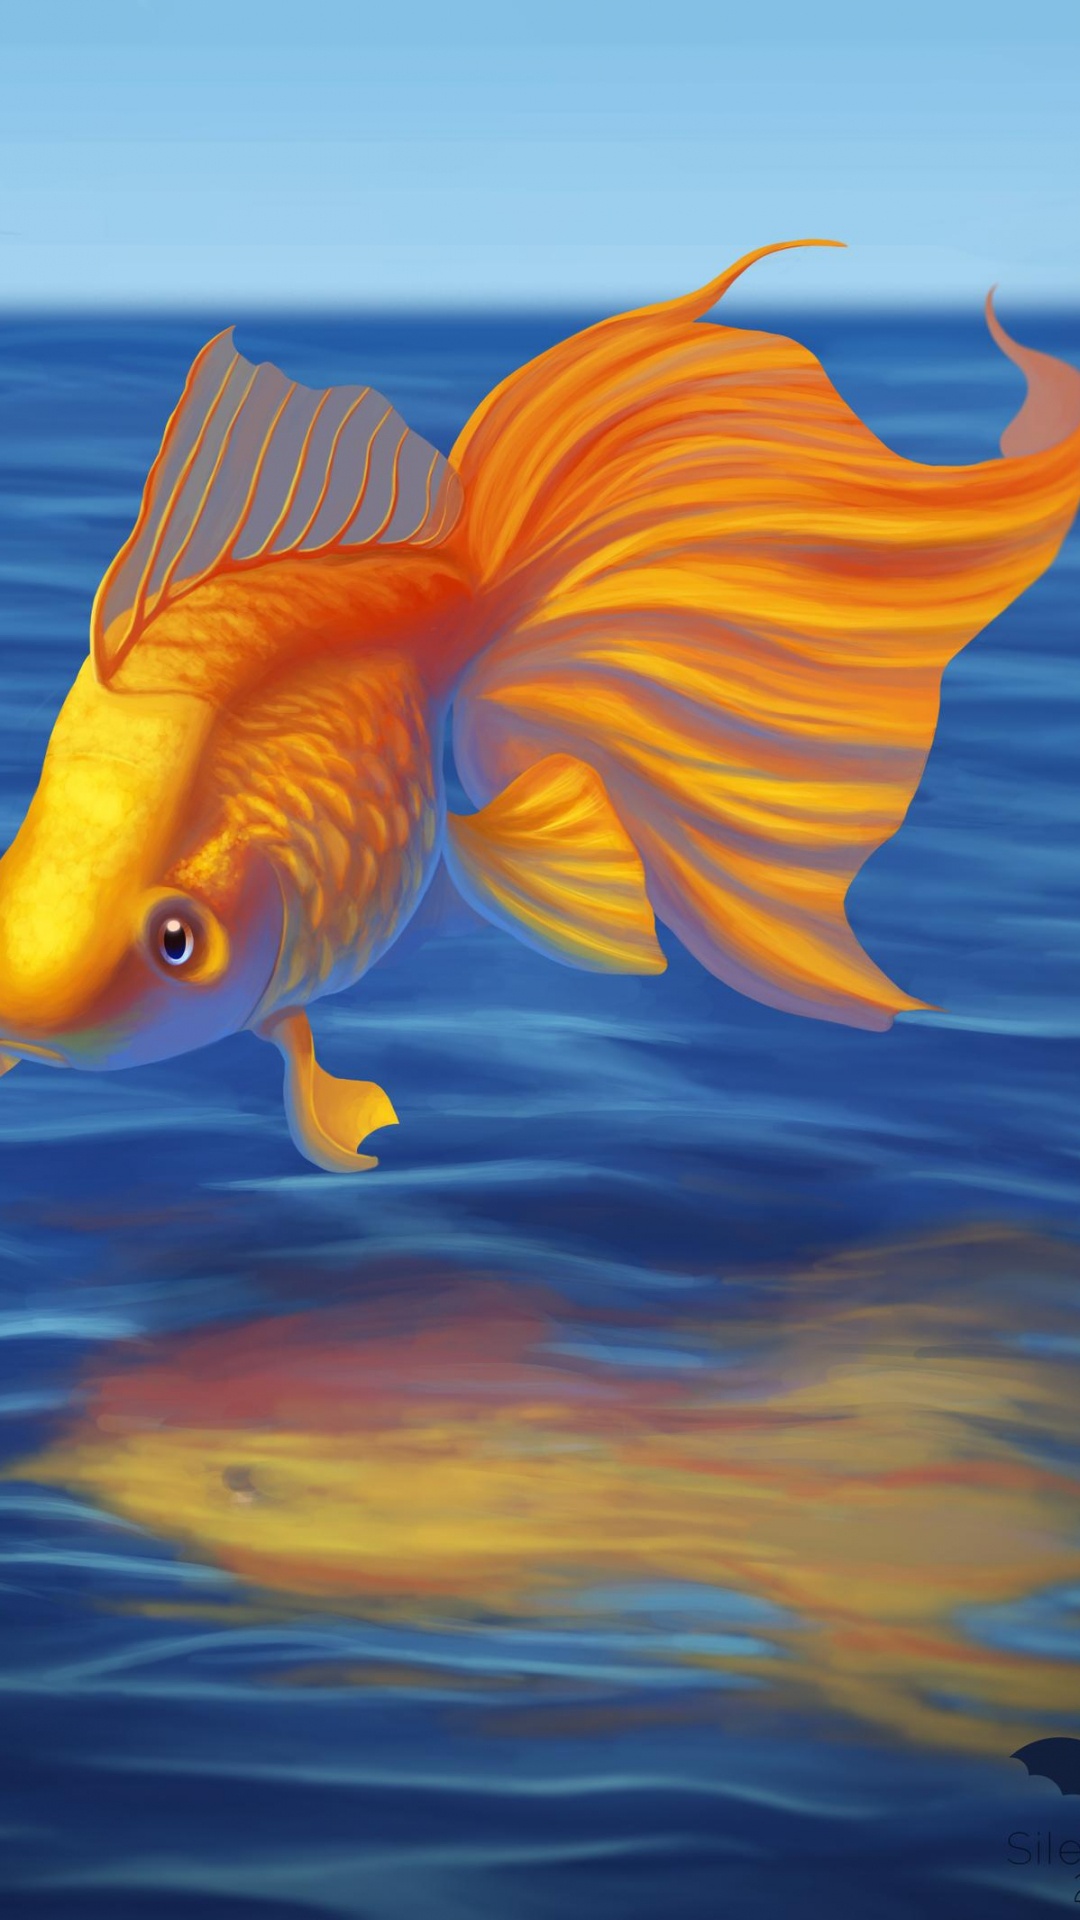 Poisson Orange et Blanc Dans L'eau. Wallpaper in 1080x1920 Resolution